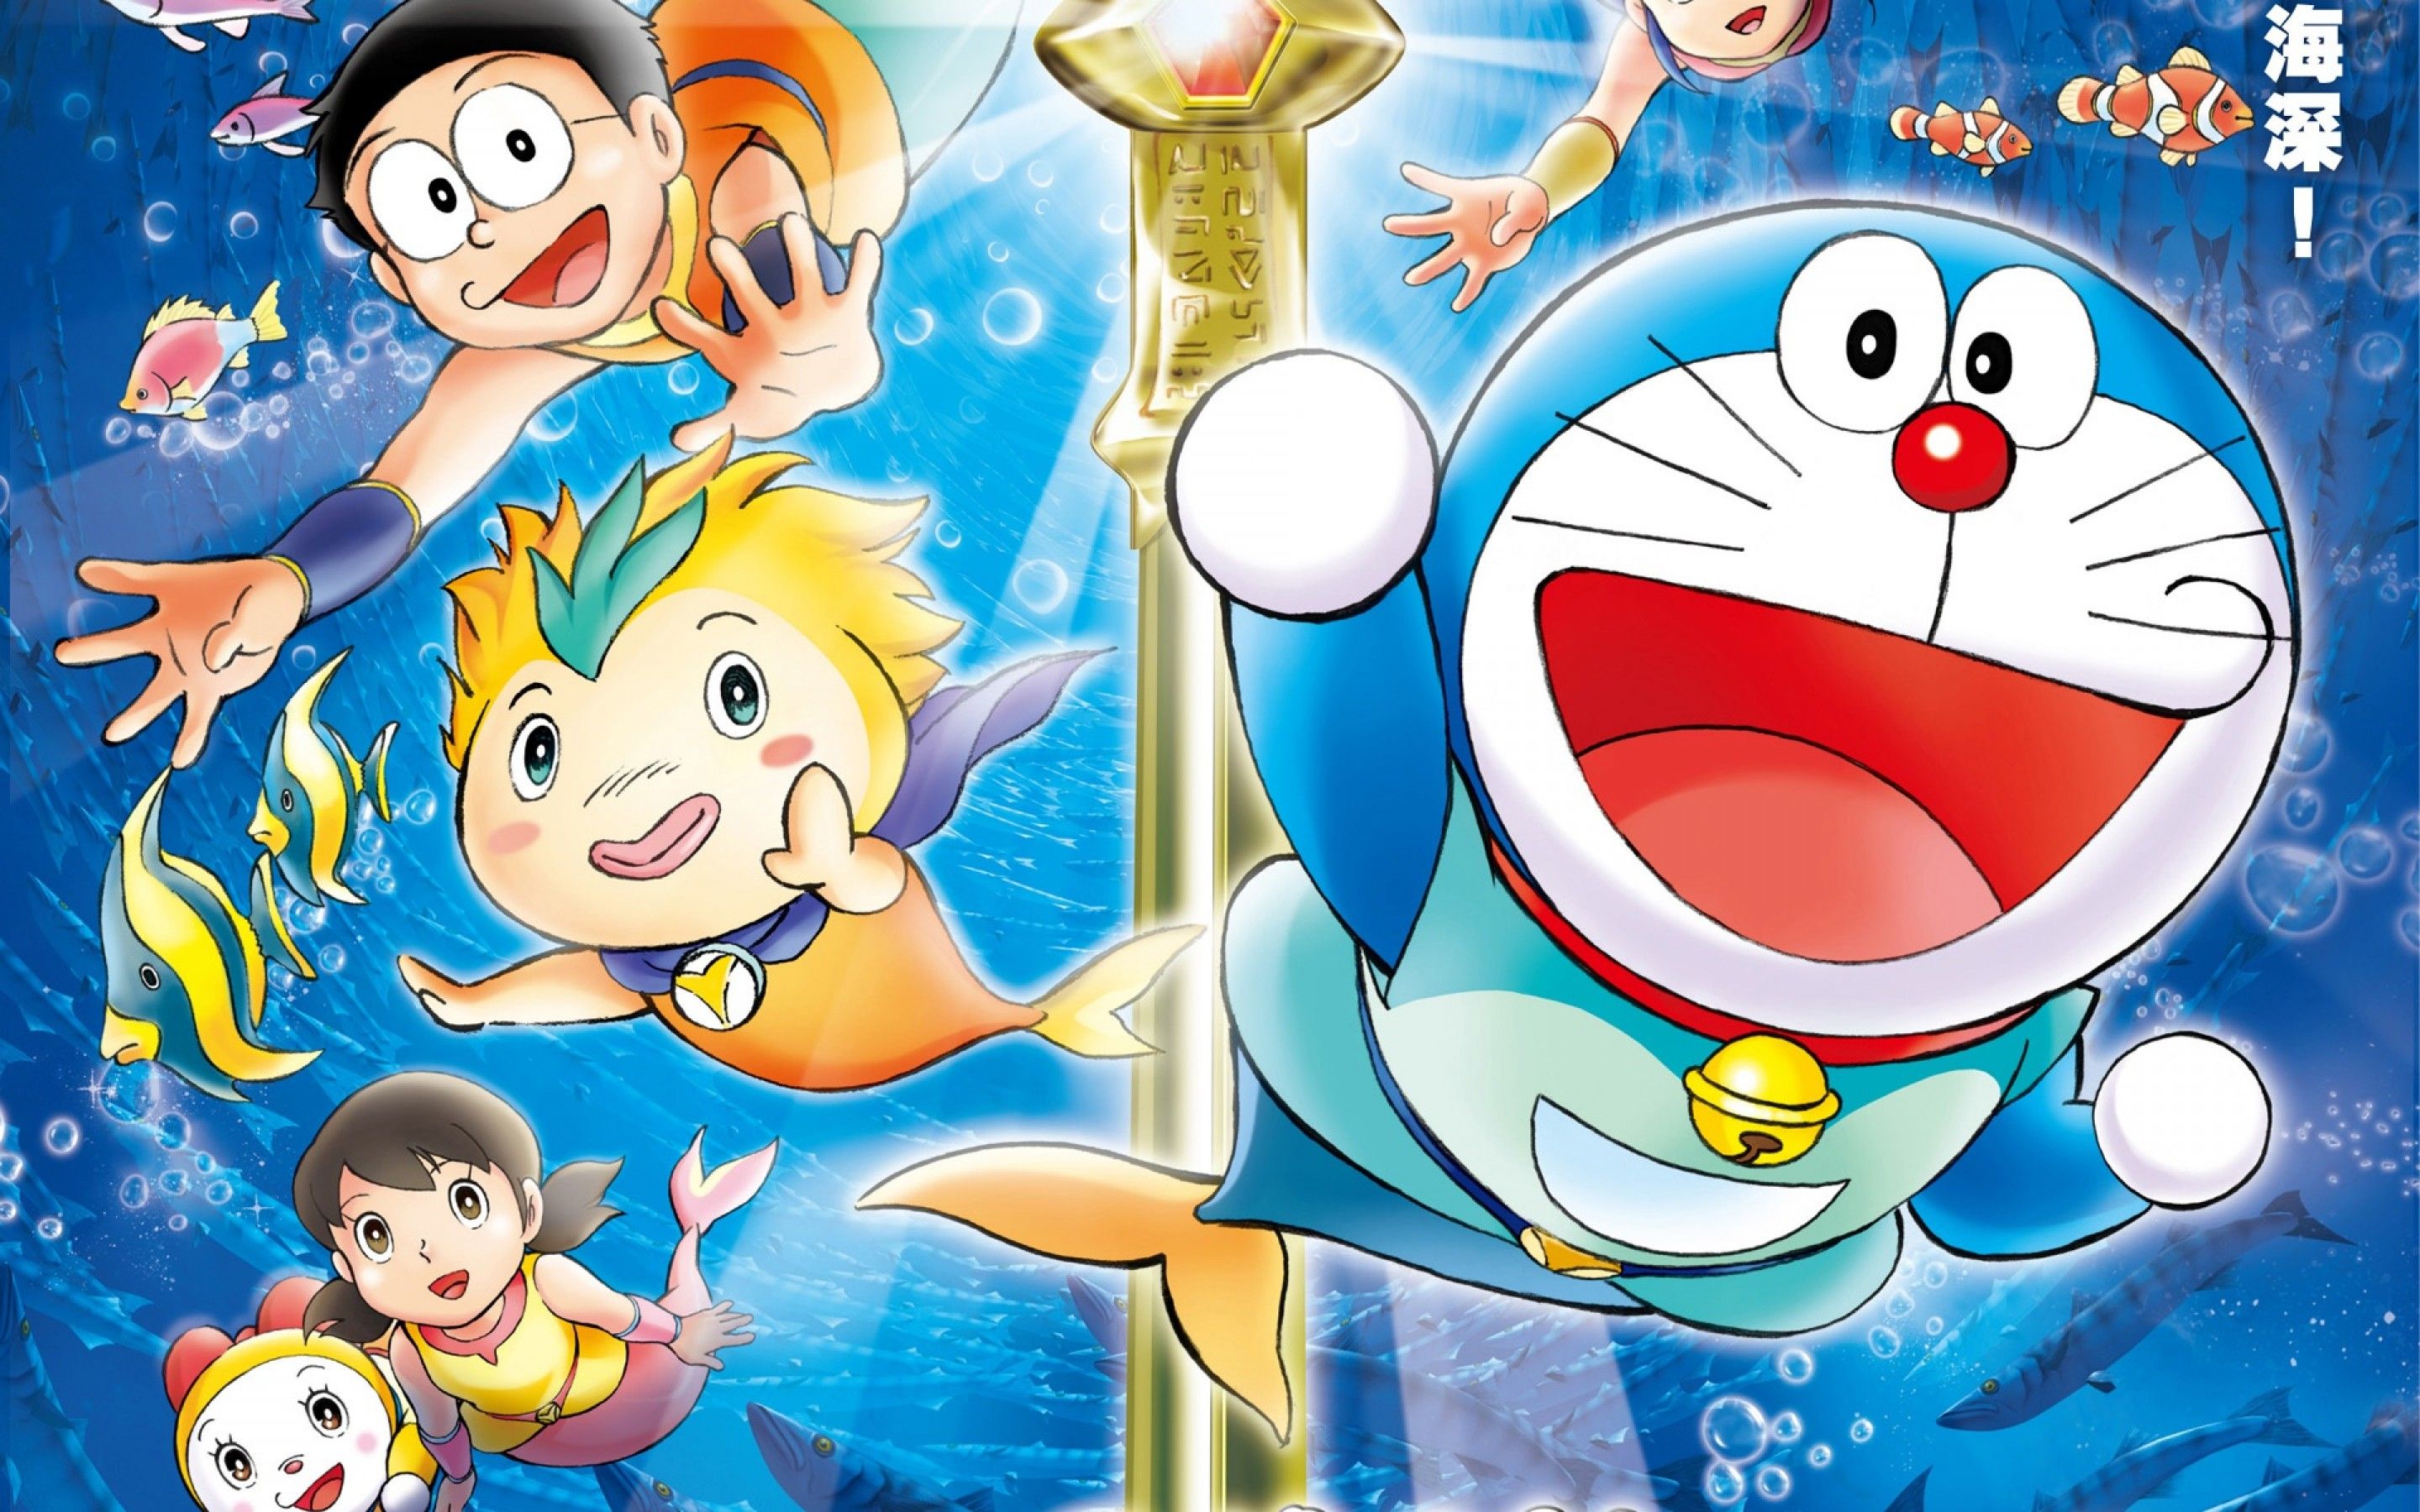 Doraemon Wallpaper For Desktop - wallpaper.